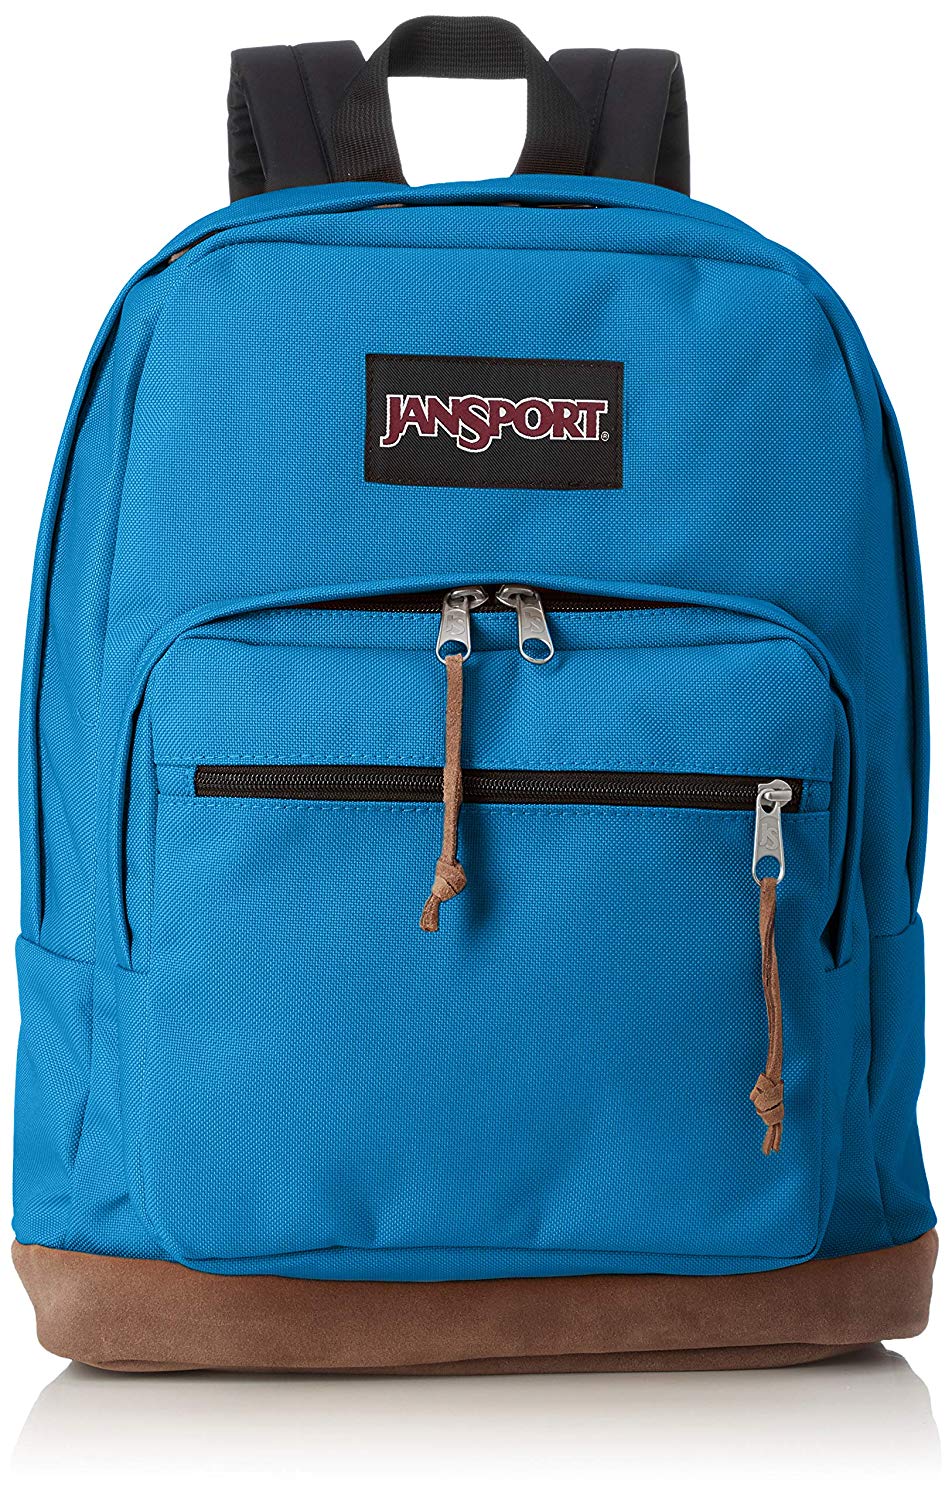 school backpacks under 20 dollars